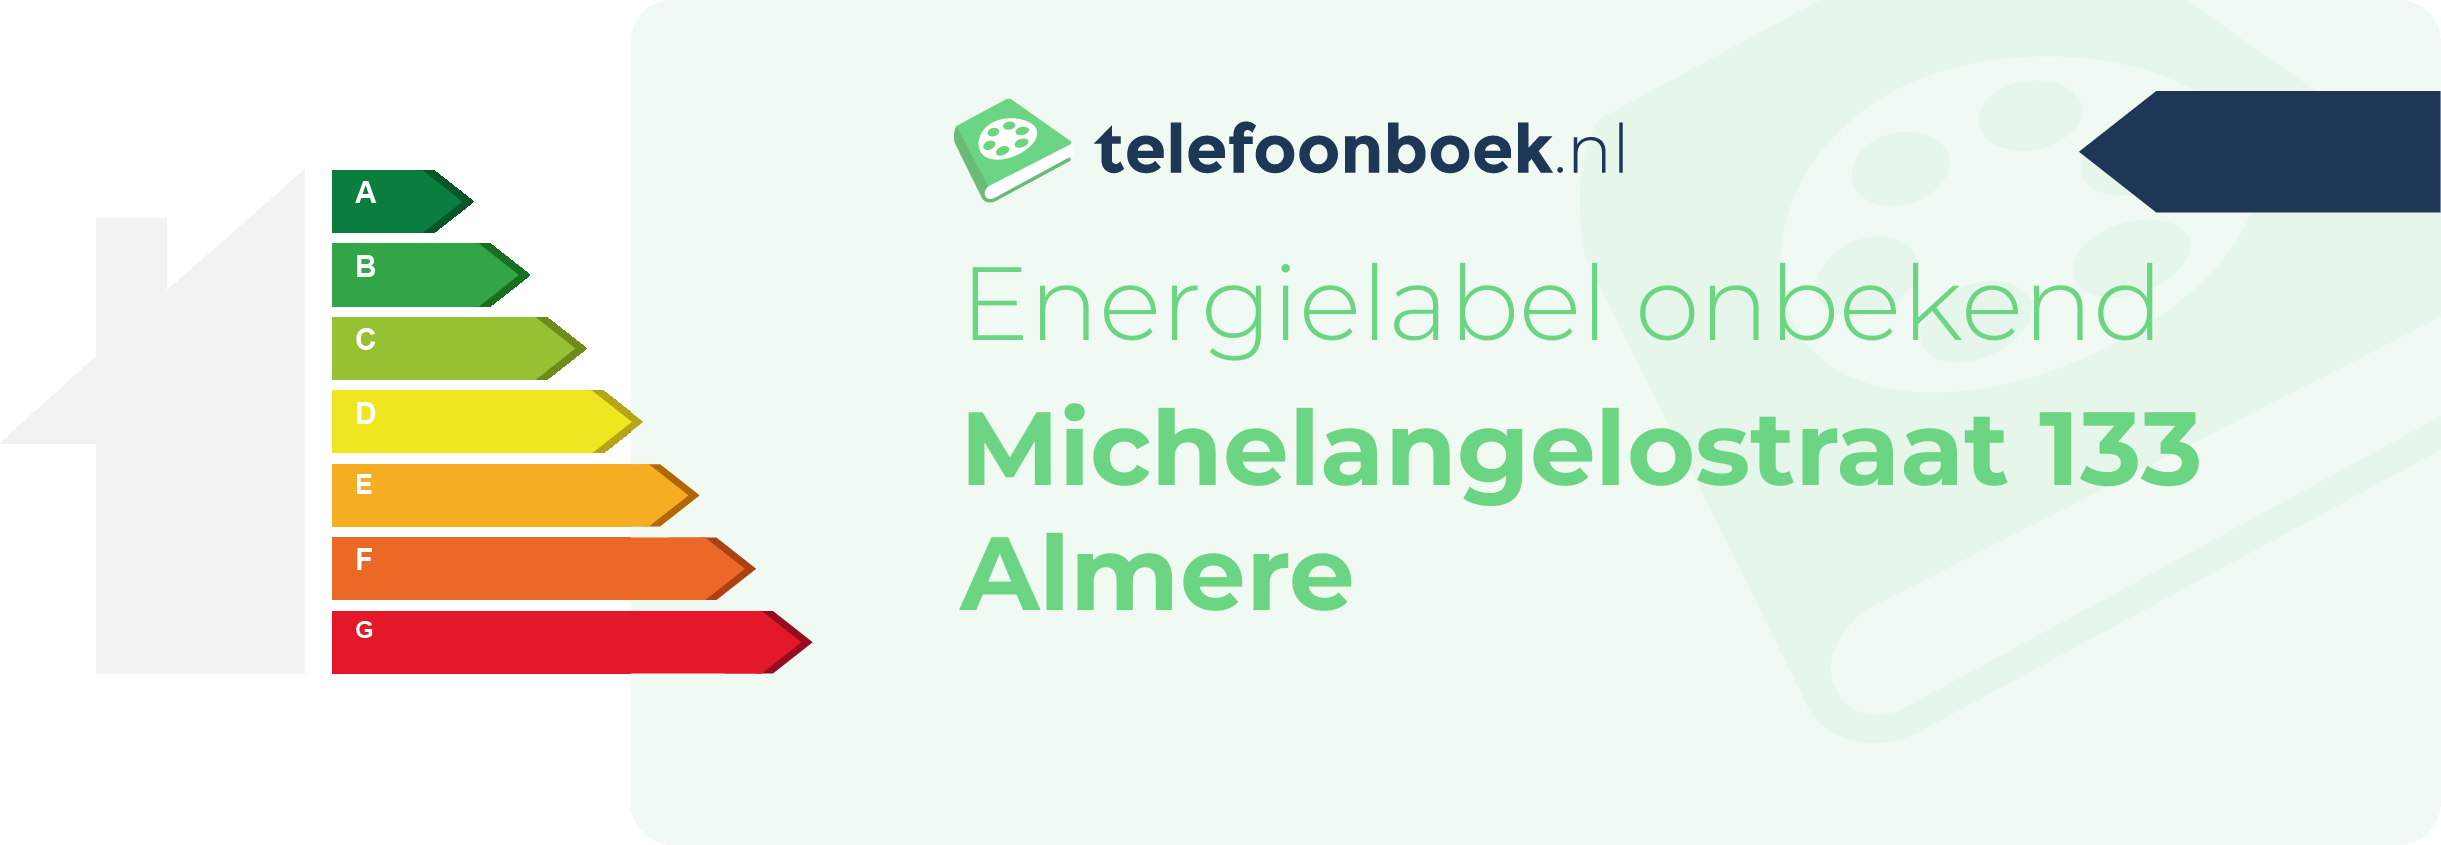 Energielabel Michelangelostraat 133 Almere